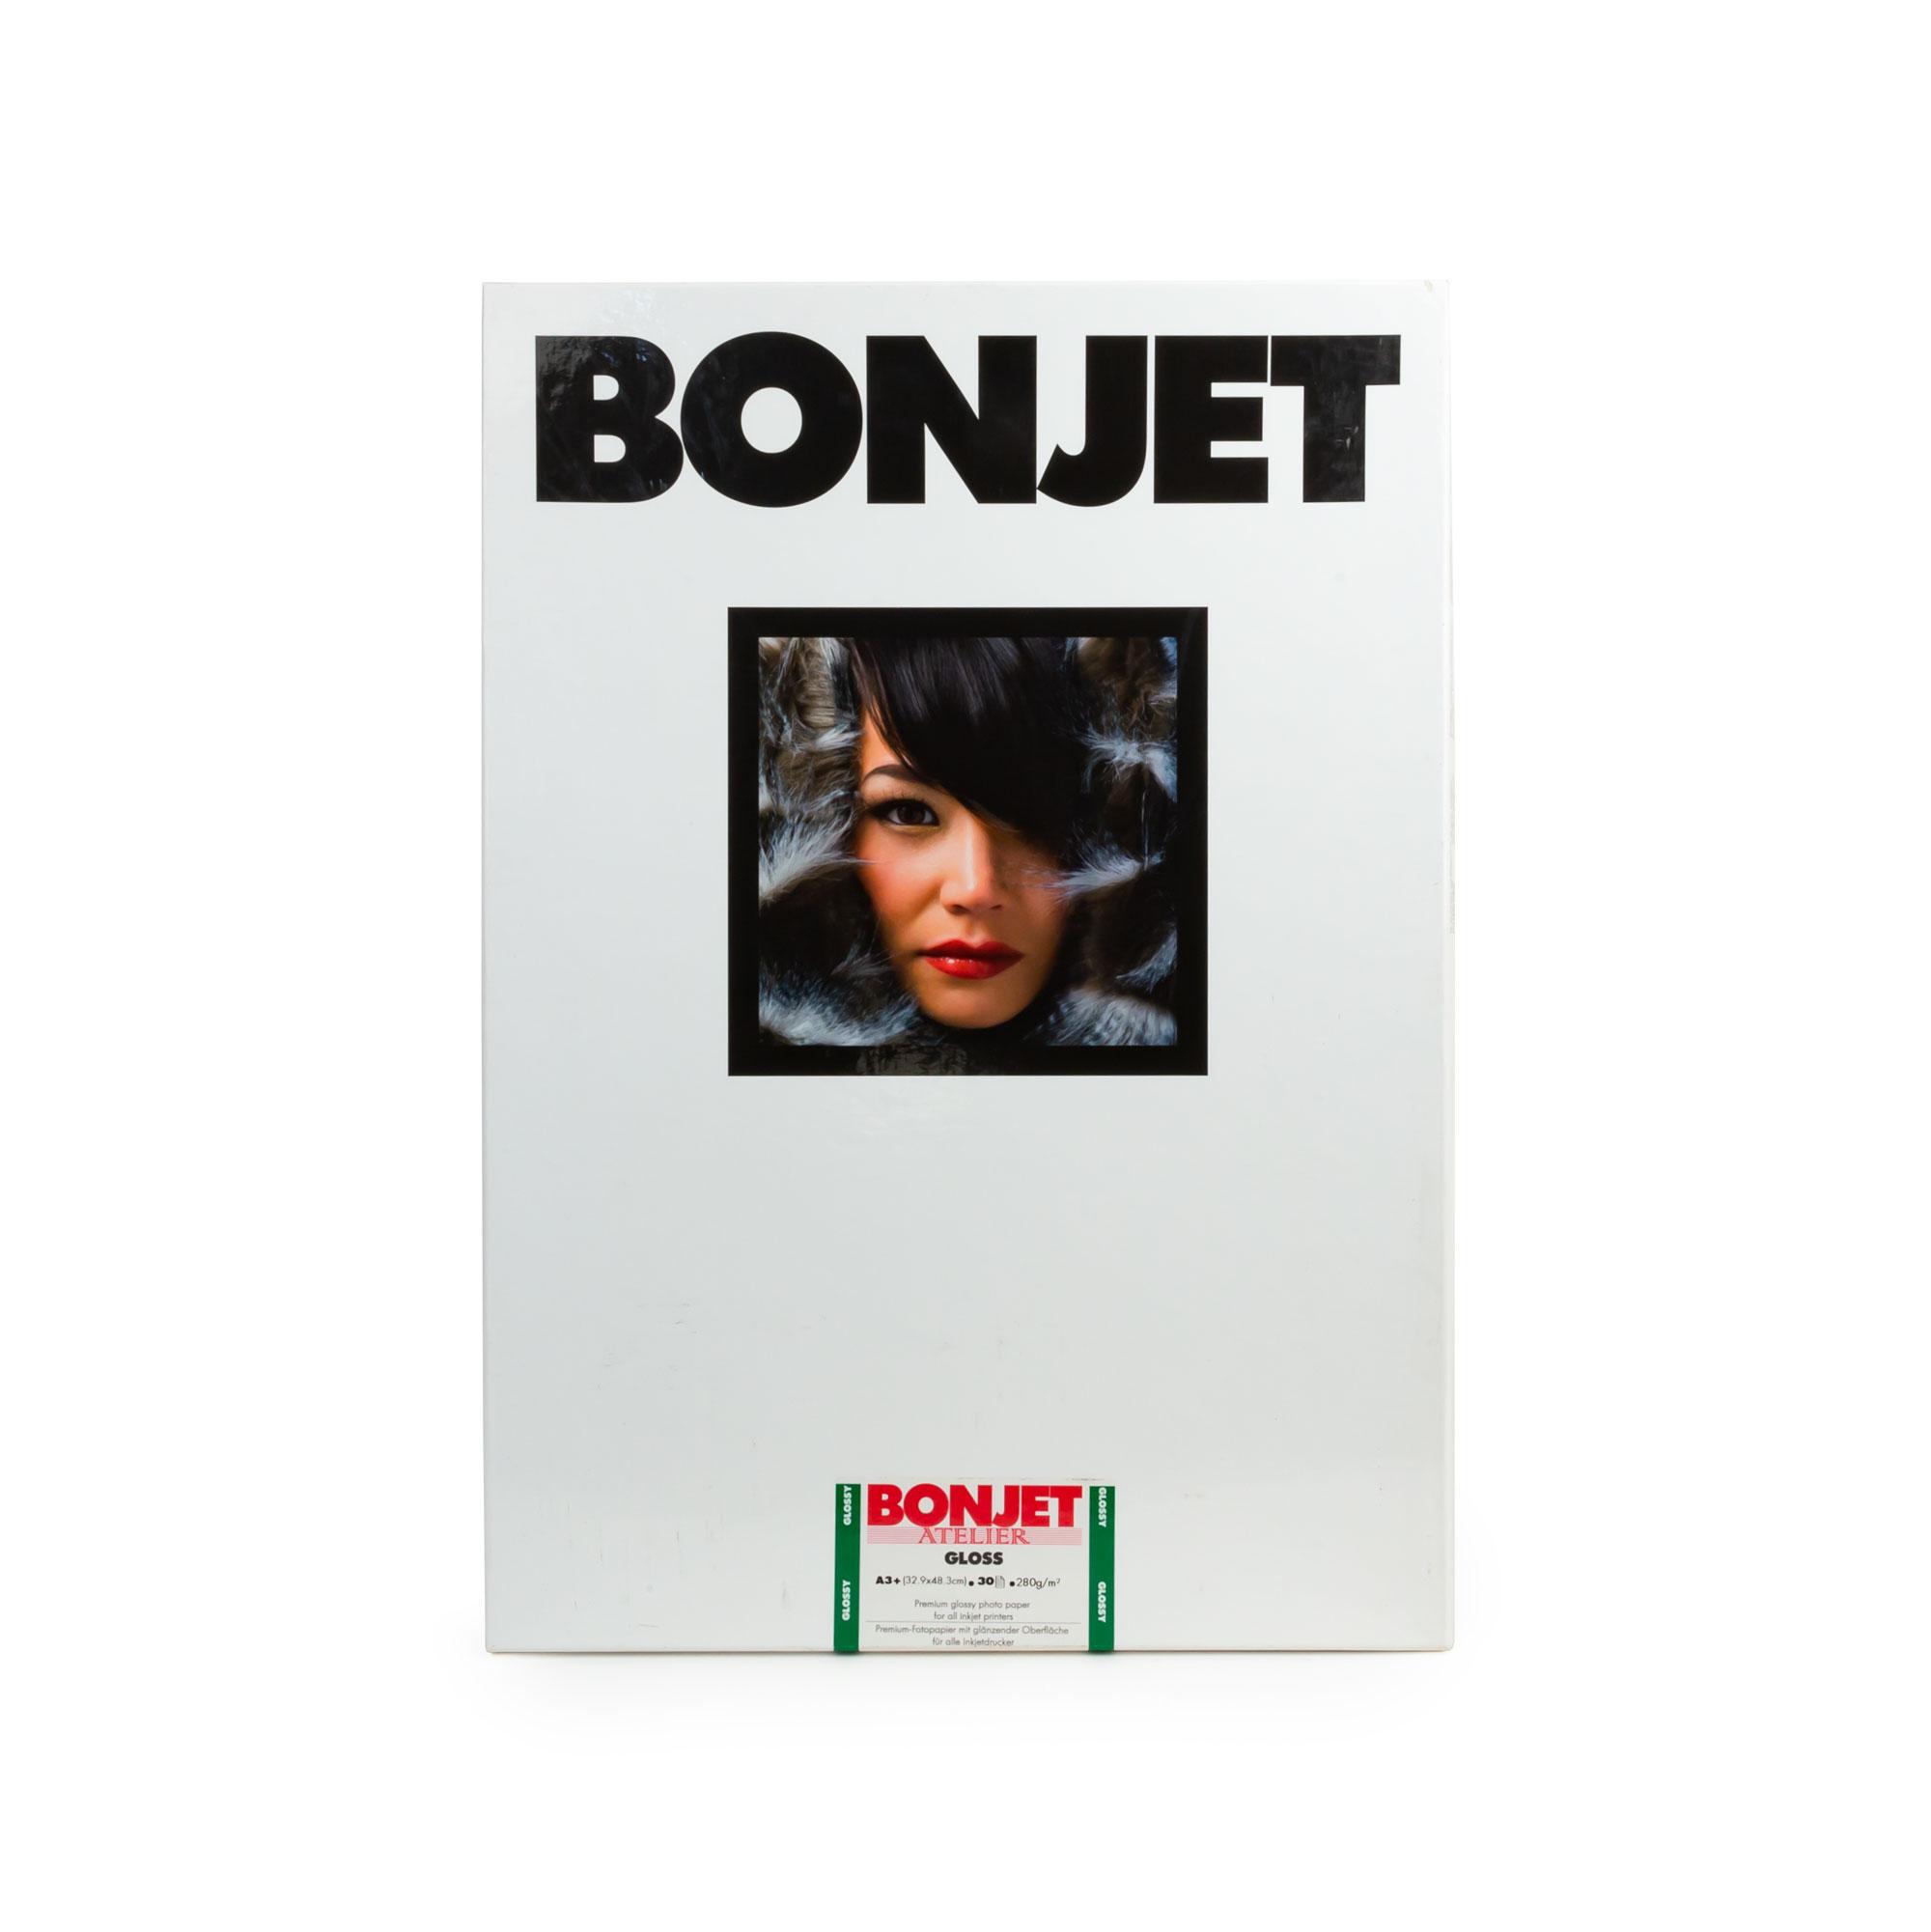 Bonjet Atelier Gloss 300g marchandises format 32,9 x 48,3 cm ( DIN A3+) - 30 feuilles